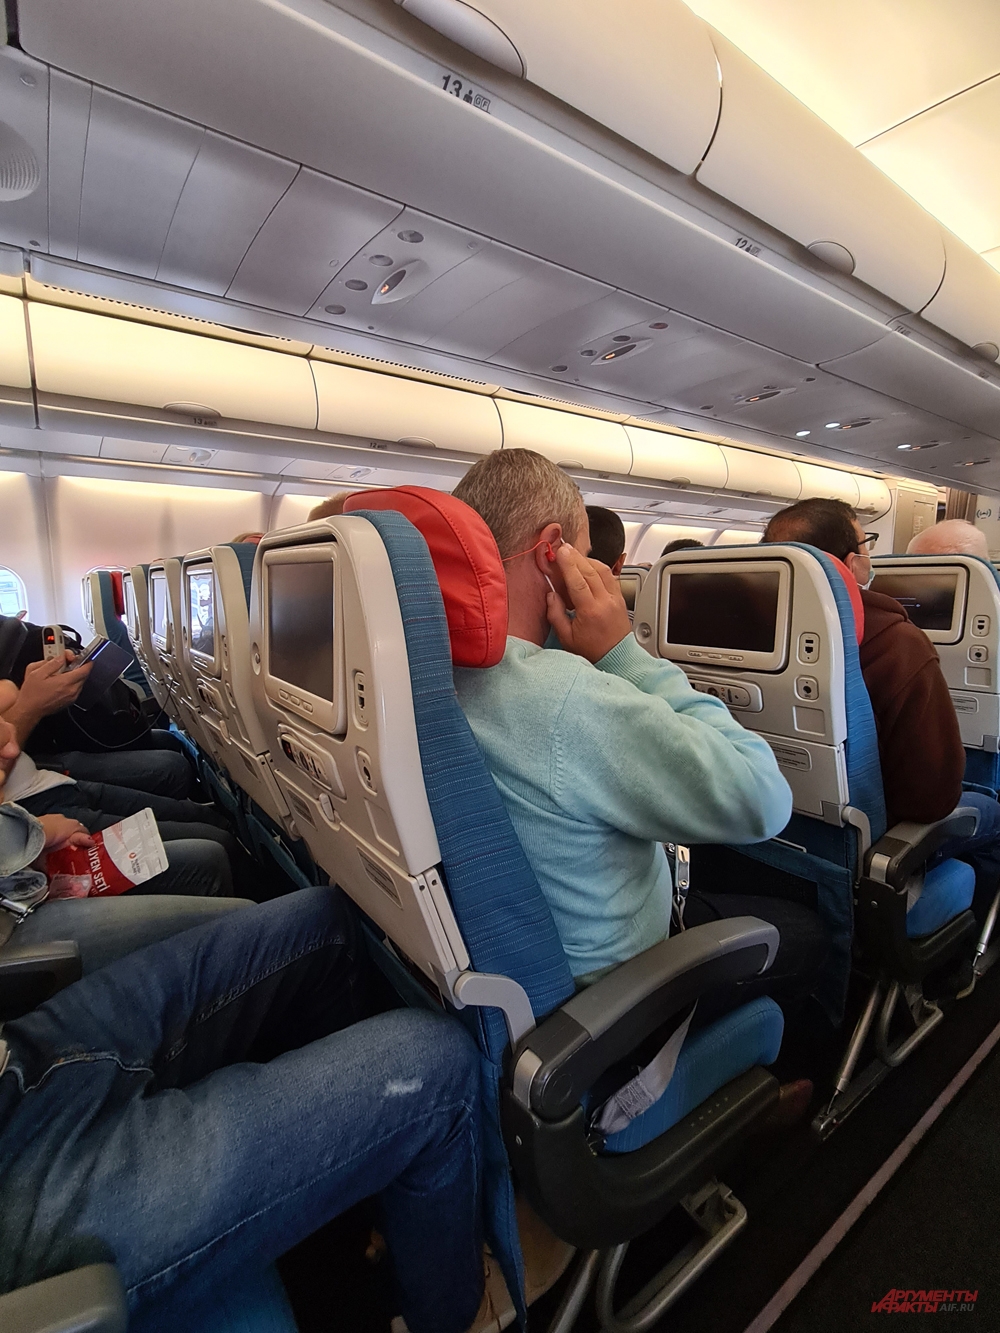 Стюардессы требуют от пассажиров сидеть весь полёт в масках.